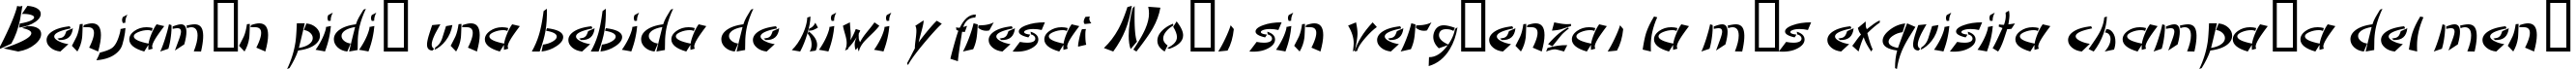 Пример написания шрифтом DomoAregato Italic текста на испанском